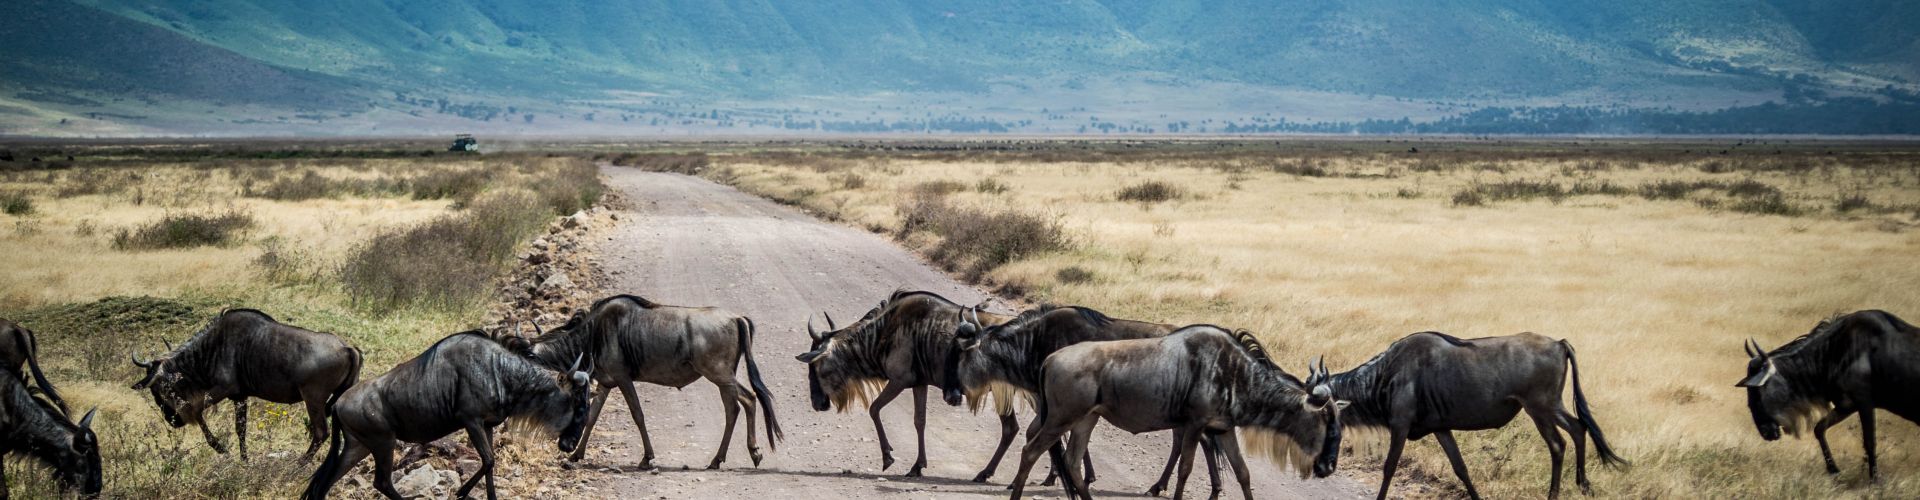 Gnus haben Vorfahrt im Ngorongoro Schutzgebiet